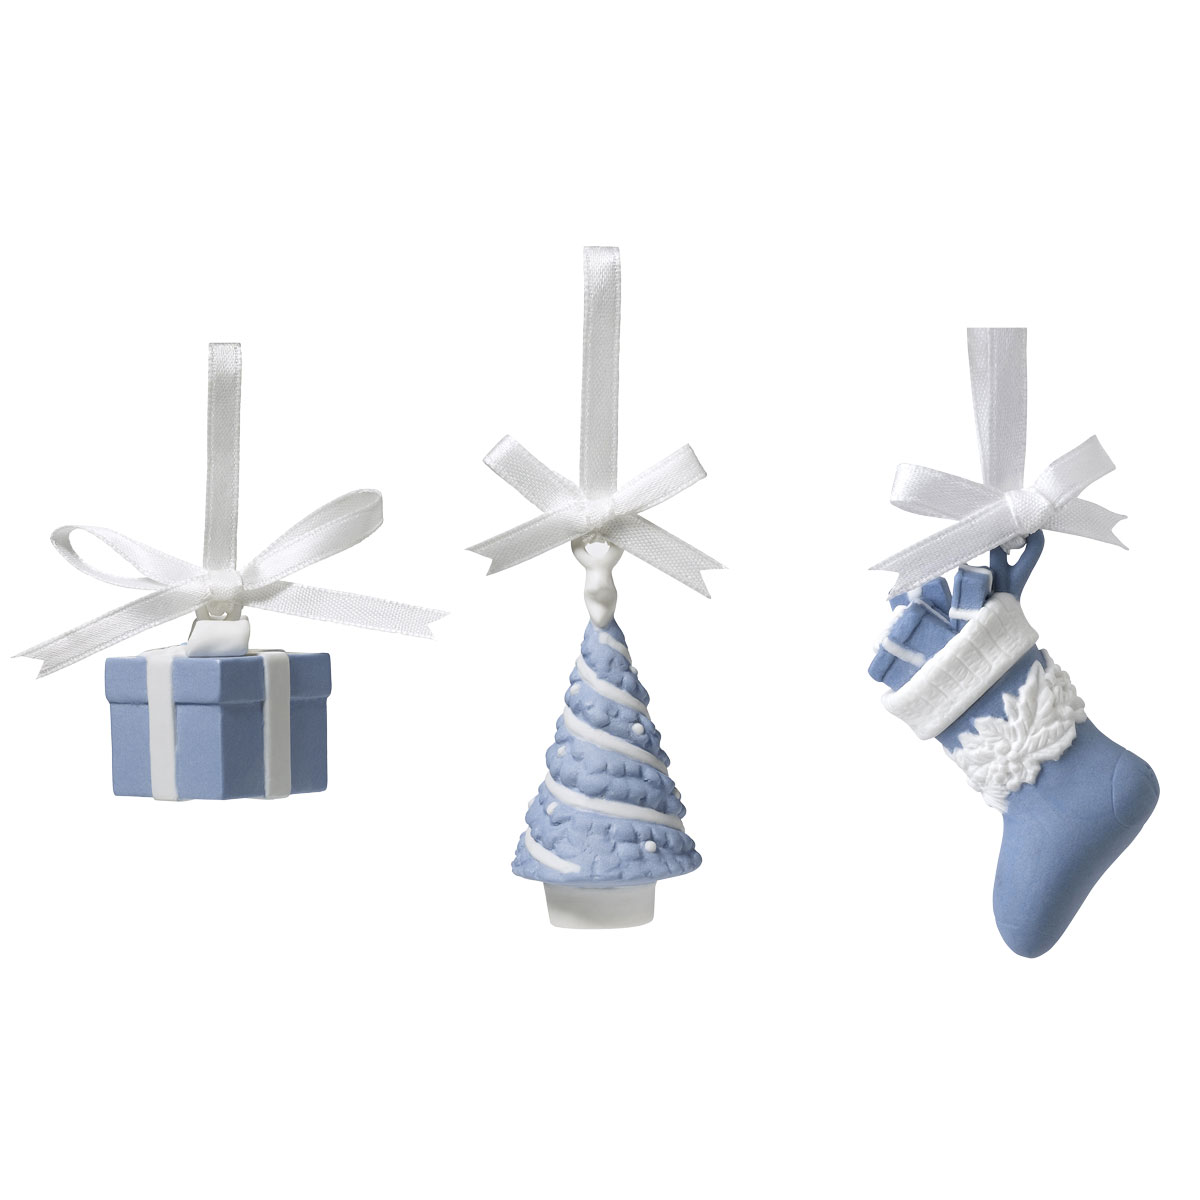 Wedgwood 2021 Festive Charm Ornaments, Set of 3